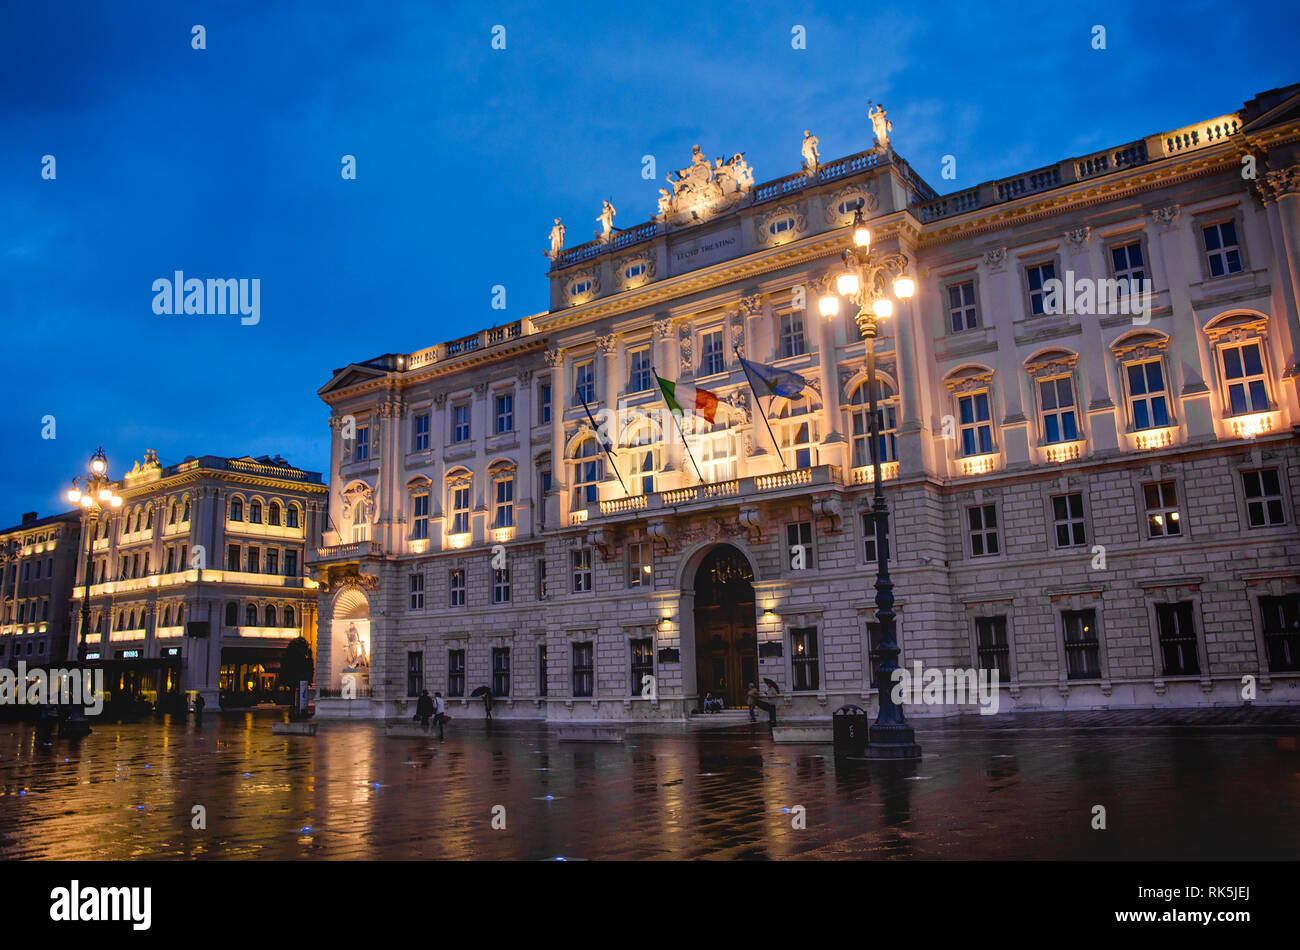 Trieste - Italy - Palazzo della Regione in Piazza Unita d'Italia square at night Stock Photo